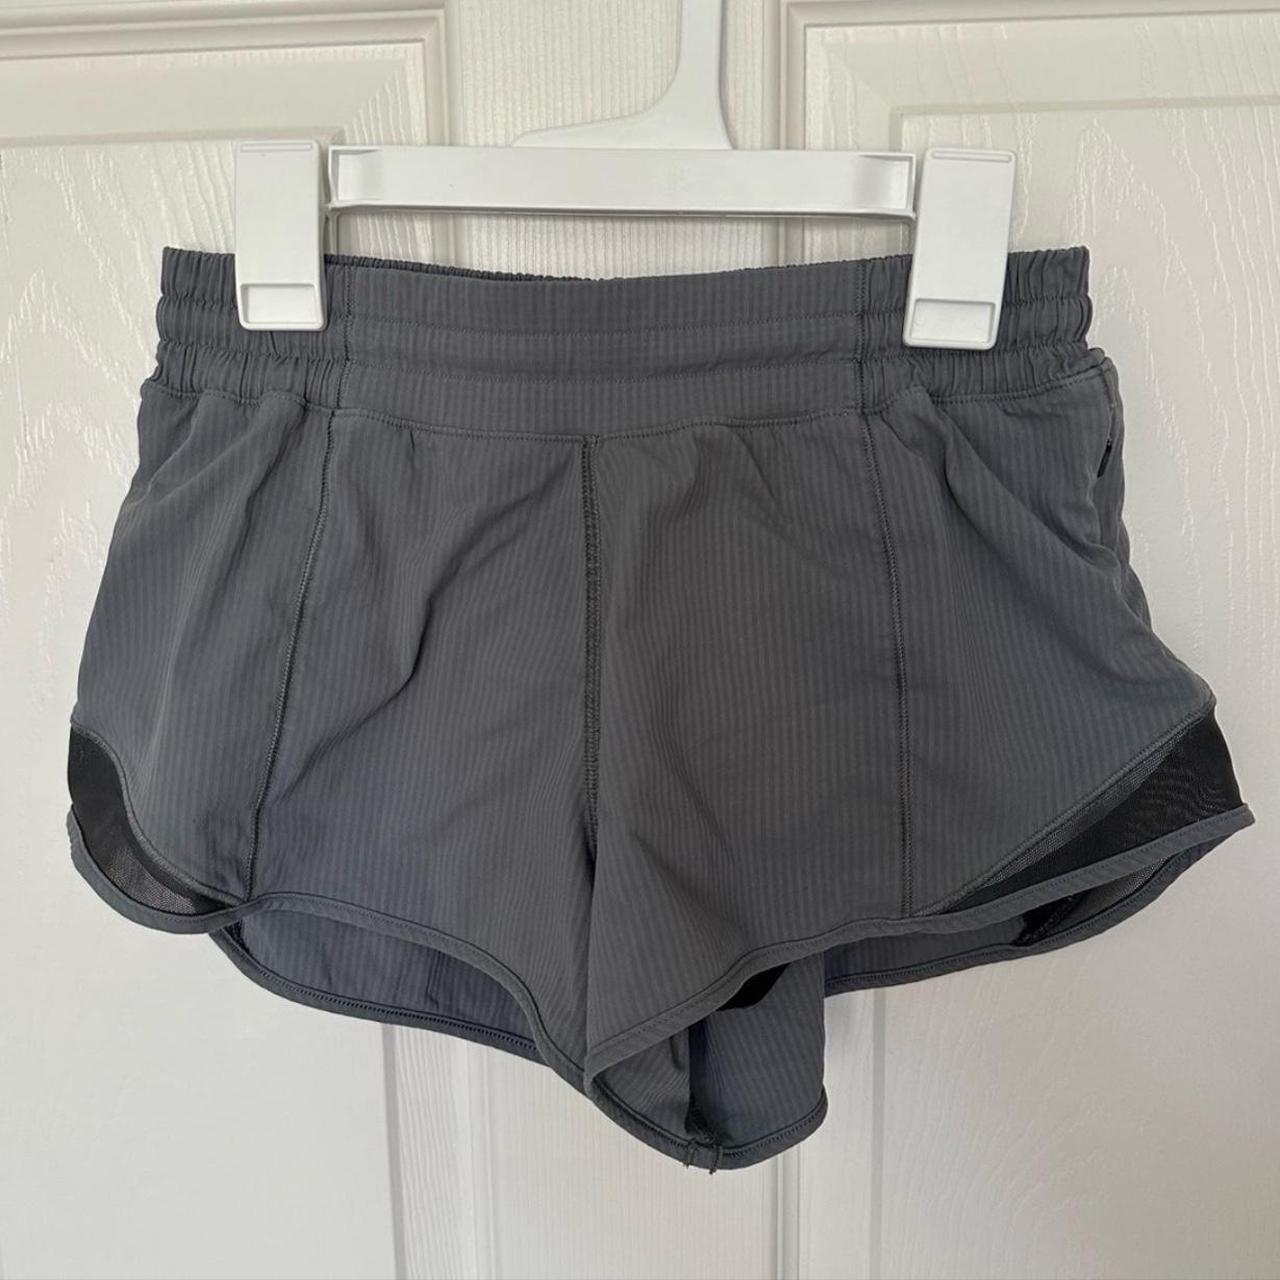 Lululemon Hotty Hot Low-Rise Lined Shorts 2.5”, Size